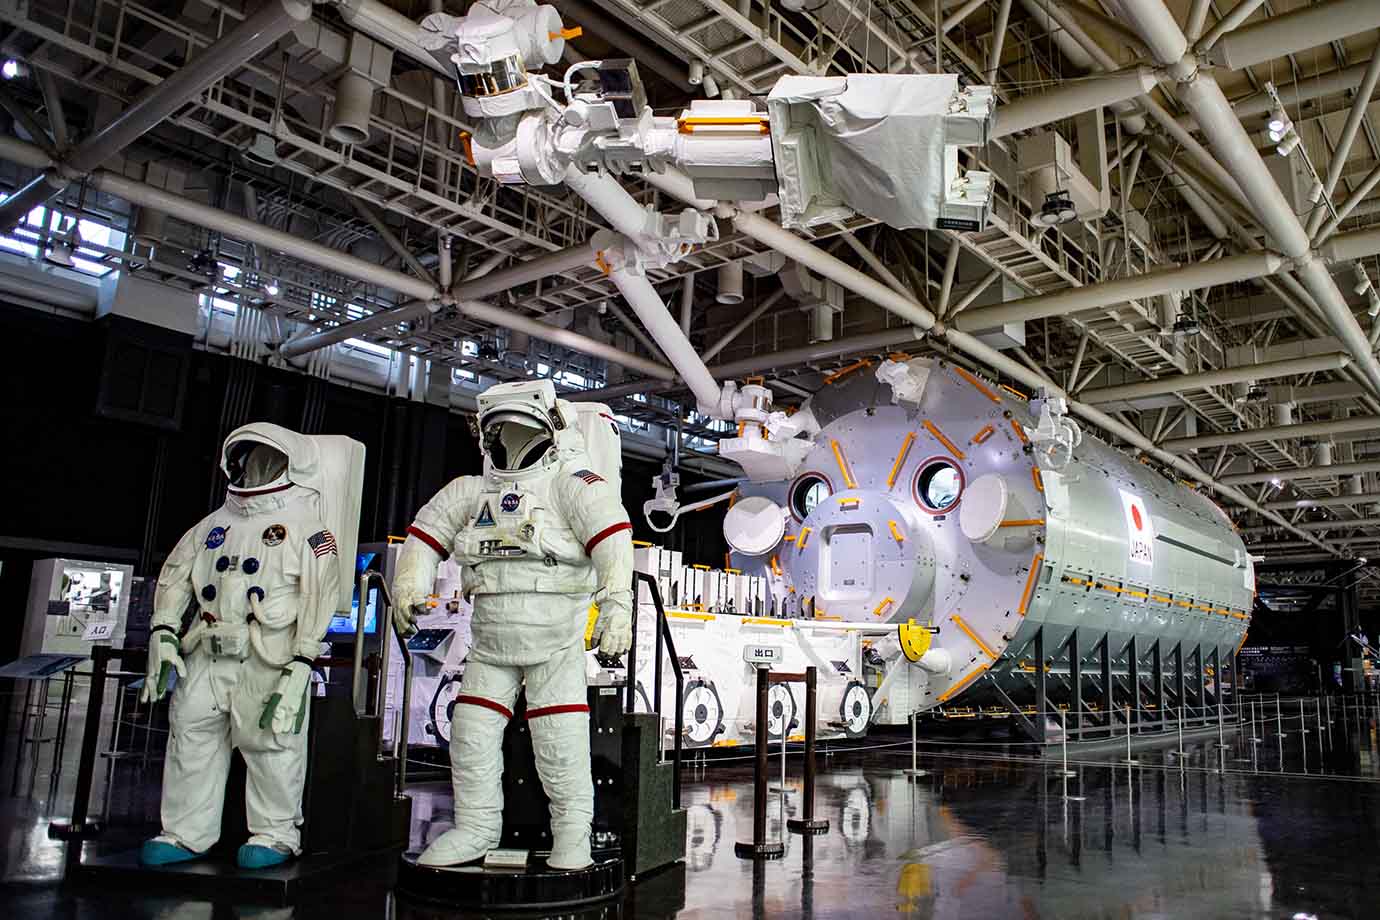 2階は宇宙エリアになっていて、内部までリアルに再現された国際宇宙ステーション（ISS）の日本実験棟「きぼう」など、さまざまな展示で宇宙開発の歴史と最新の情報を紹介しています